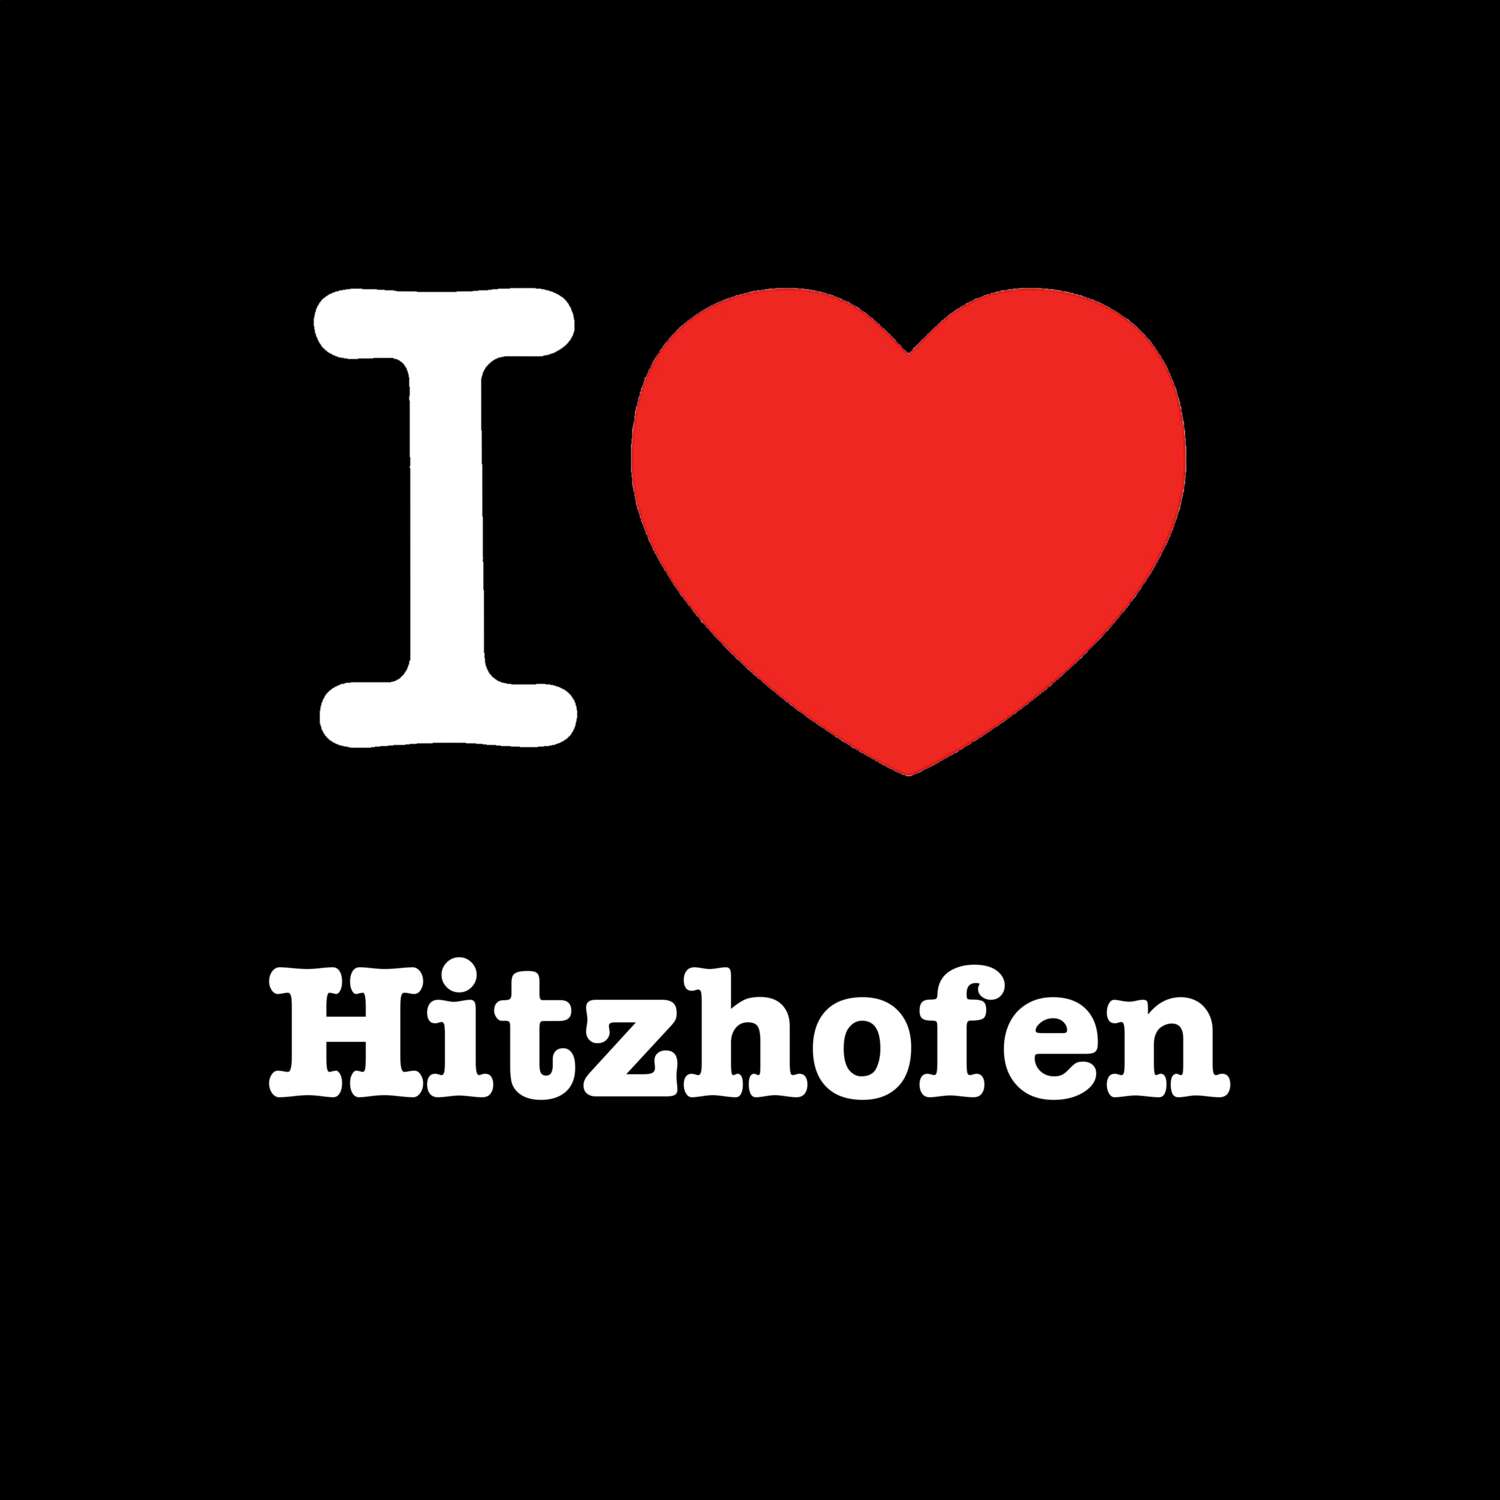 Hitzhofen T-Shirt »I love«